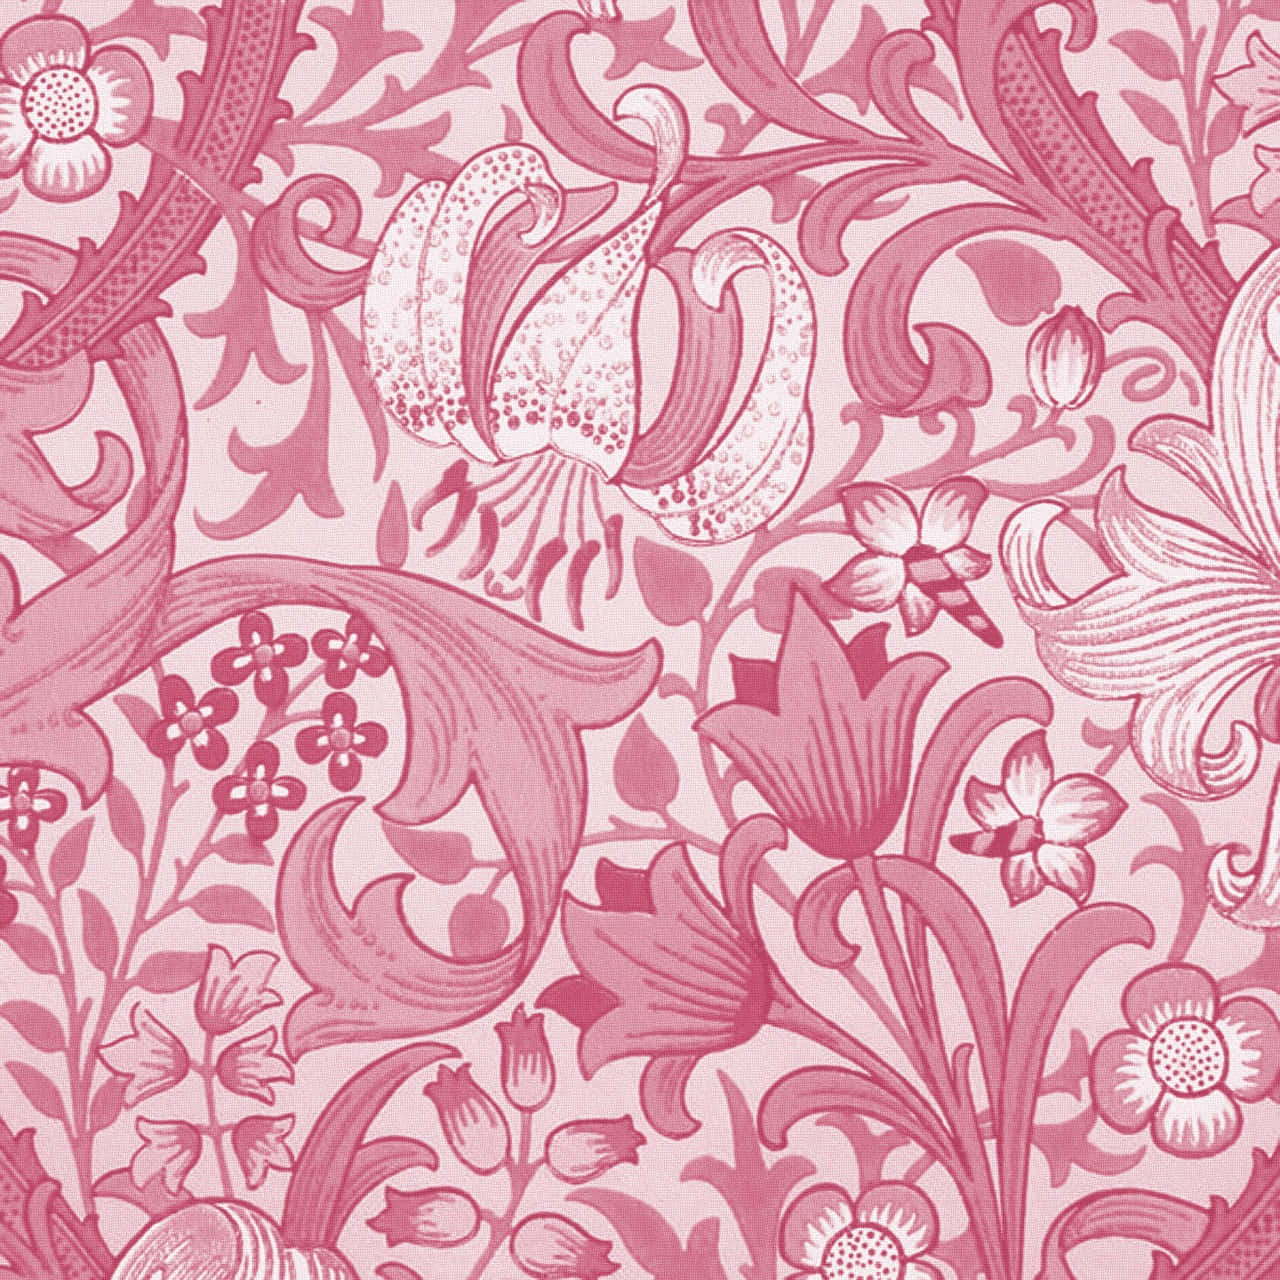 Beautiful abstract pink swirl pattern